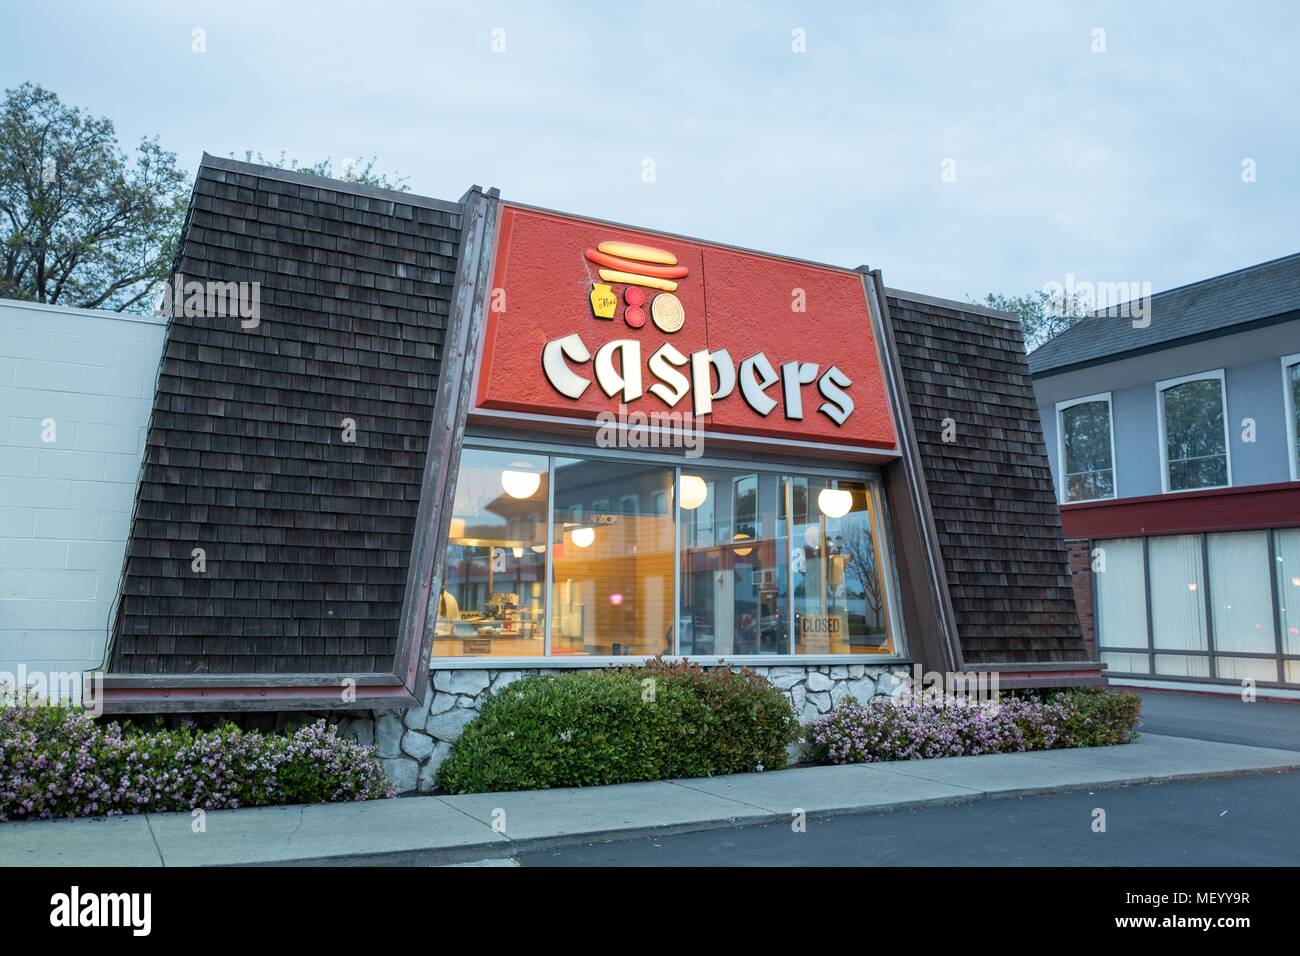 Fachada con signo en el restaurante de estilo retro Casper's Hot Dogs, establecida originalmente en 1934, en el centro de Dublin, California durante la noche, 9 de abril de 2018. () Foto de stock